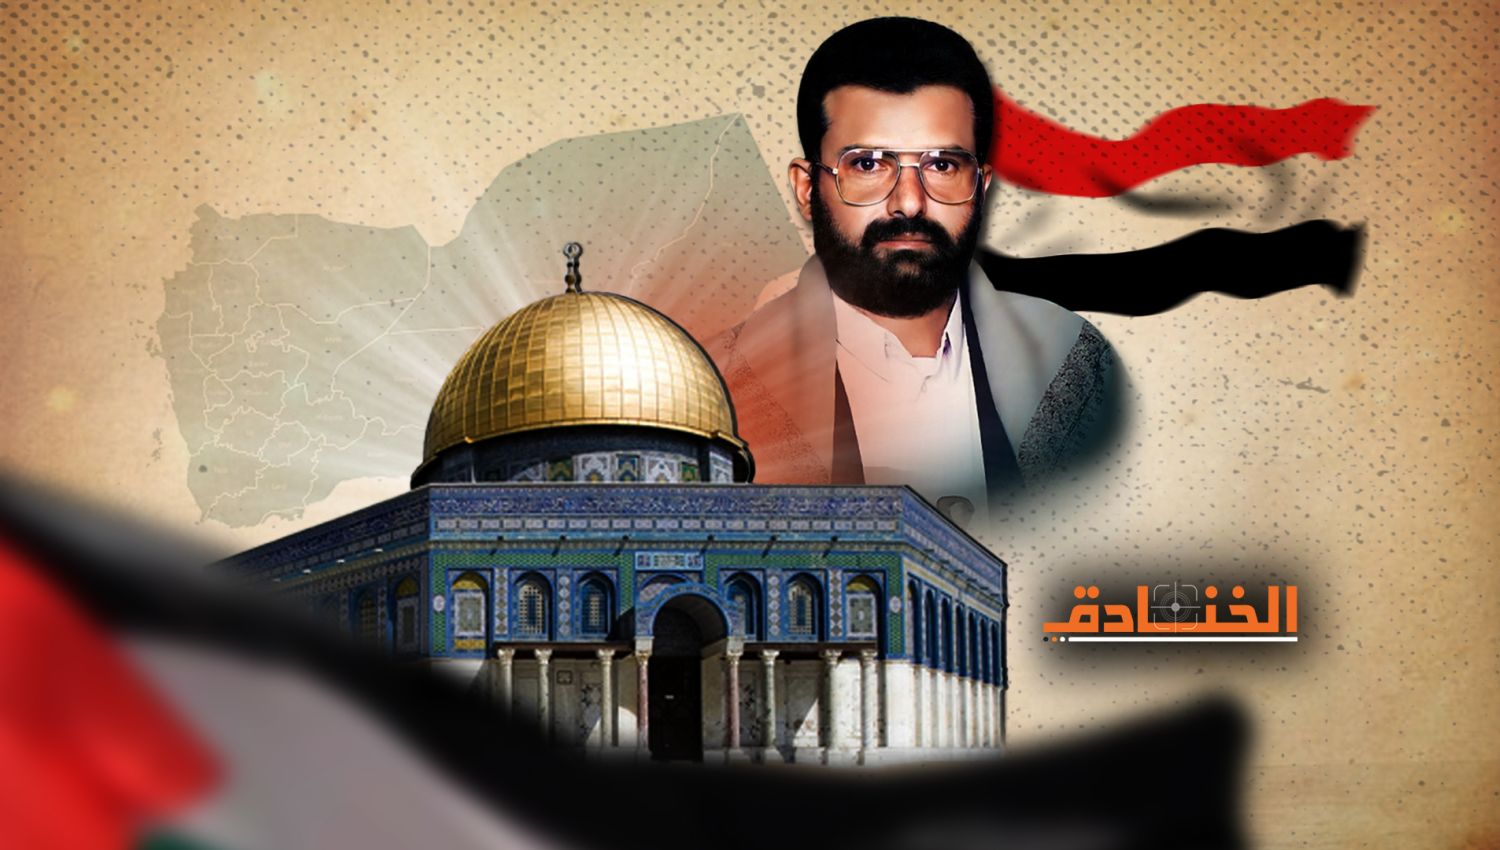 الشهيد حسين الحوثي في يوم القدس: معرفة العدو أول طريق التحرير